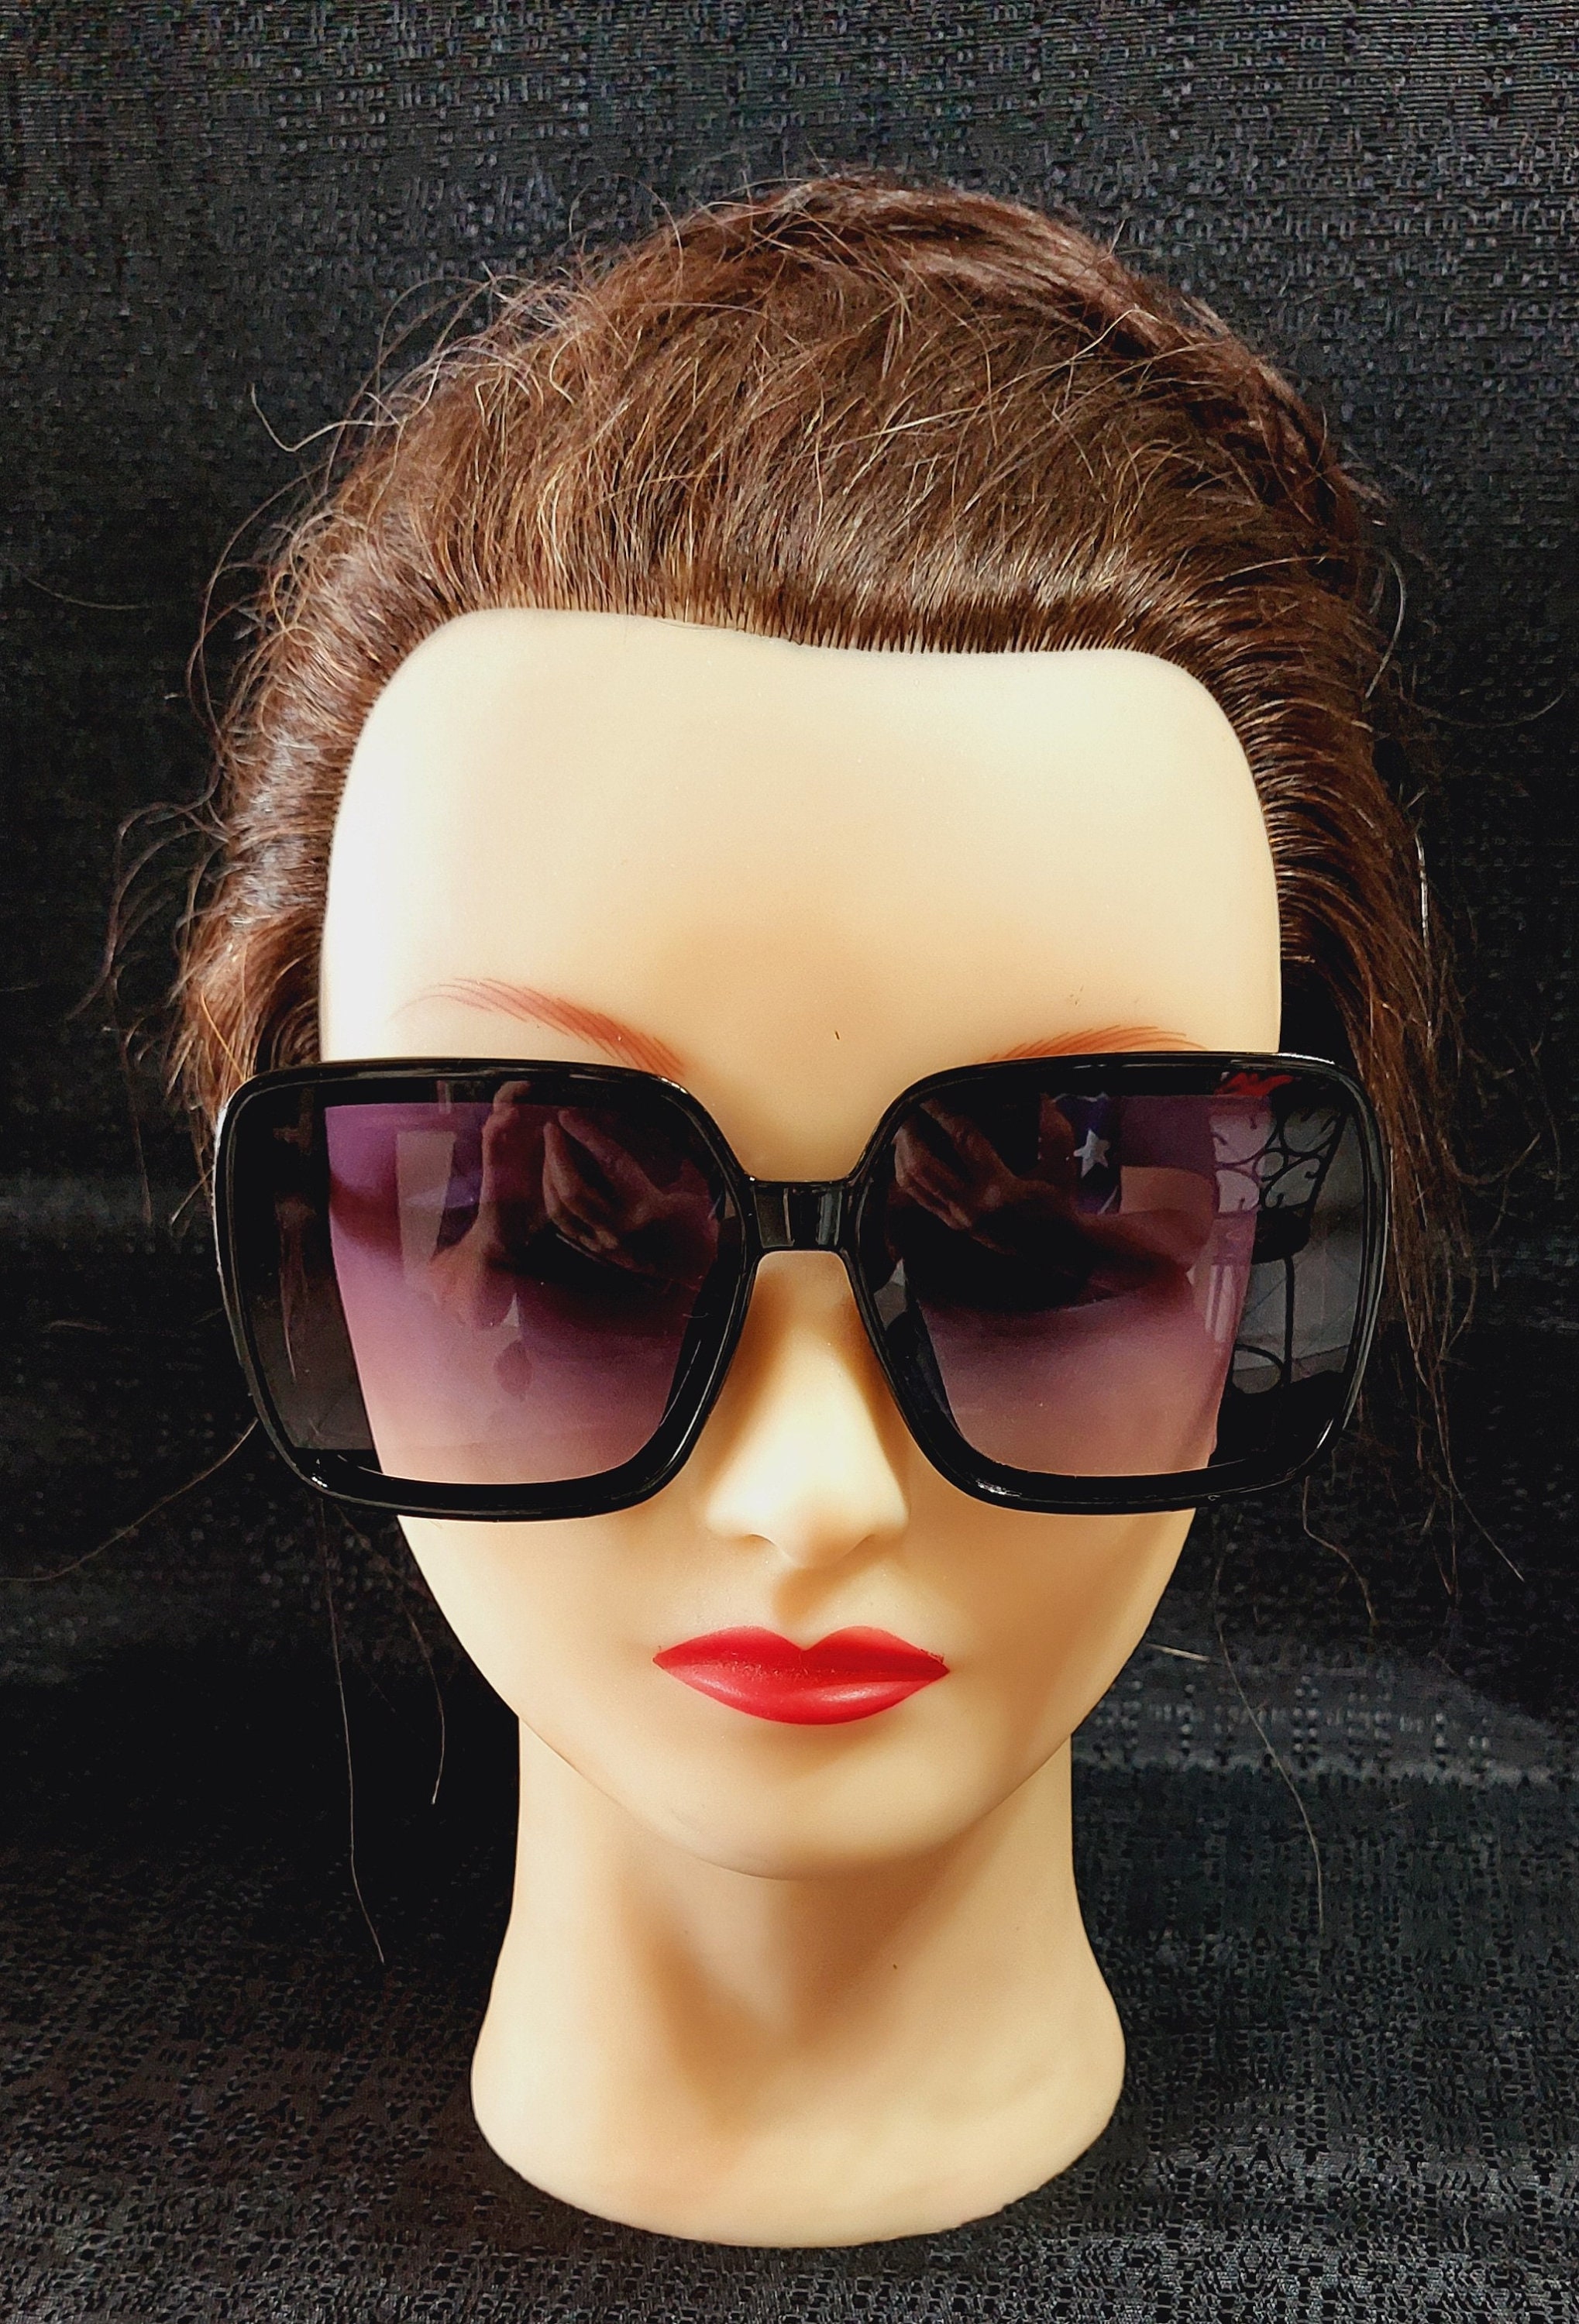 Buy Big Black Sunglasses Online In India -  India